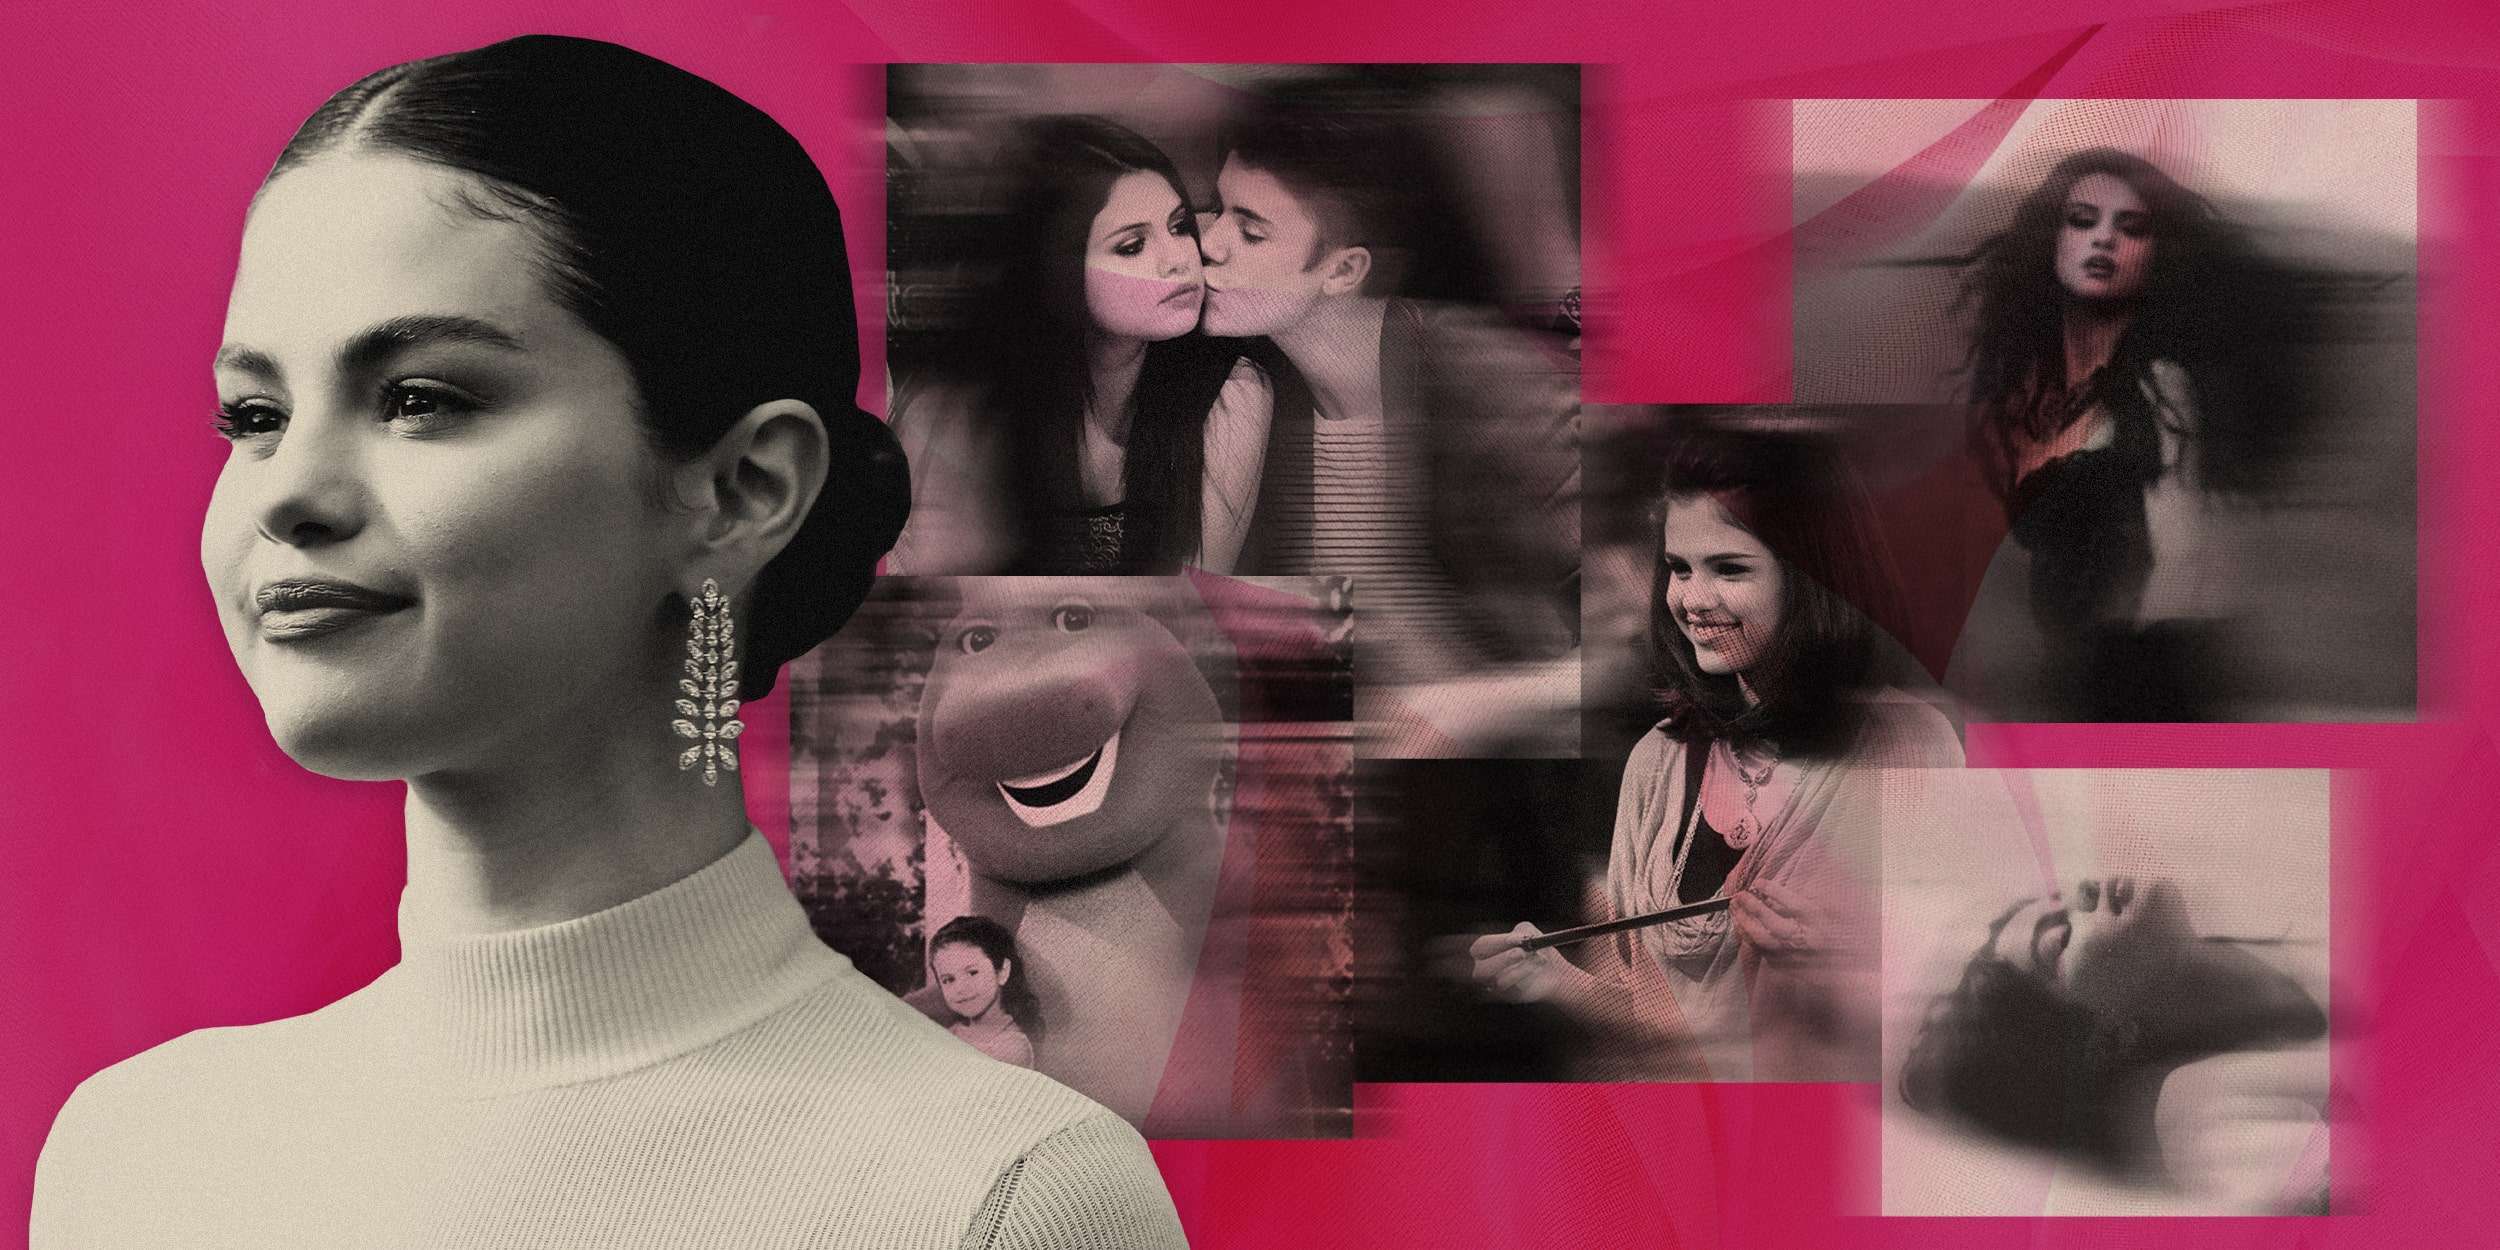 Review of Selena Gomez's album My Mind & Me